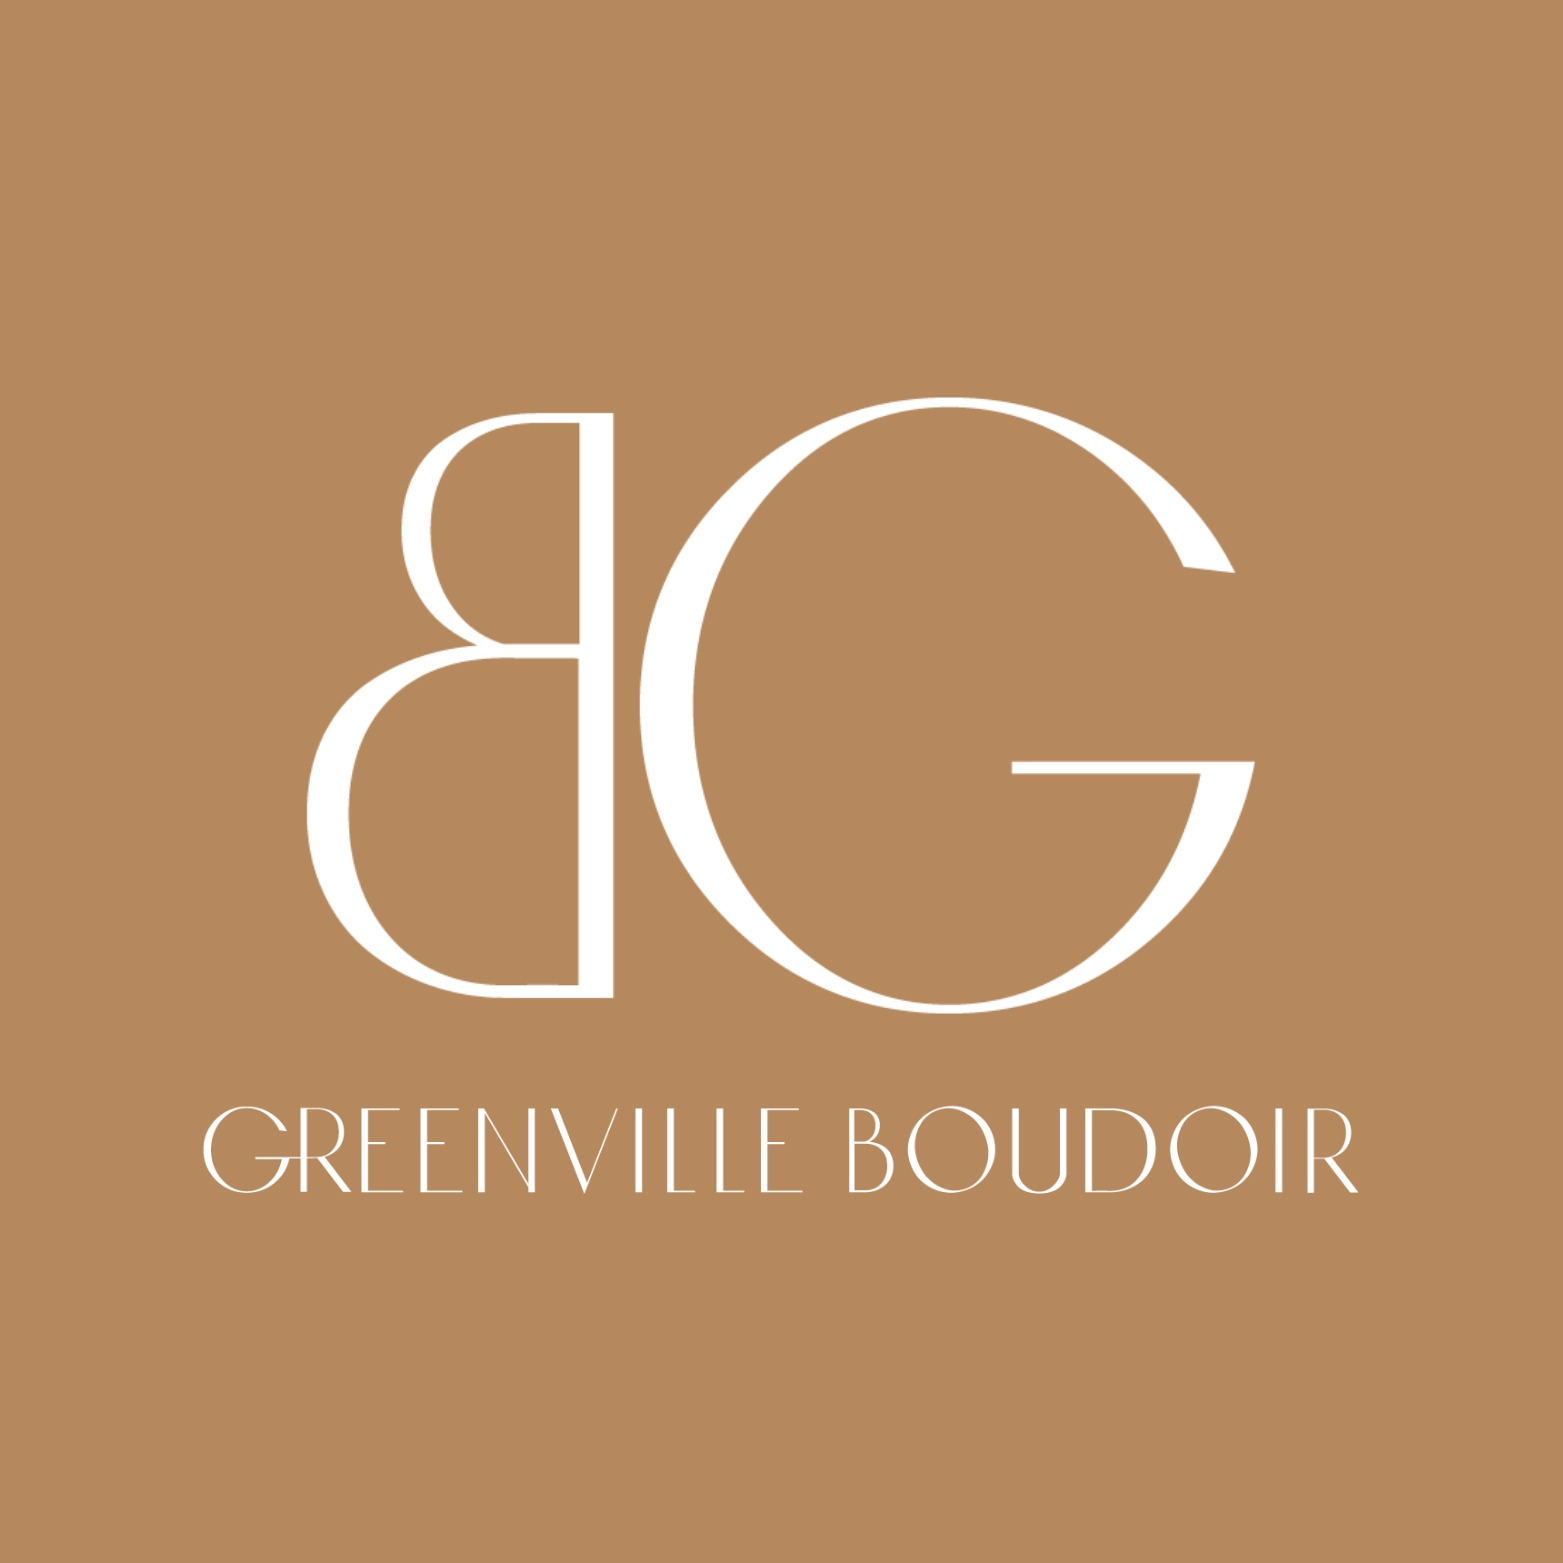 Greenville Boudoir - Fountain Inn, SC 29644 - (864)531-0927 | ShowMeLocal.com